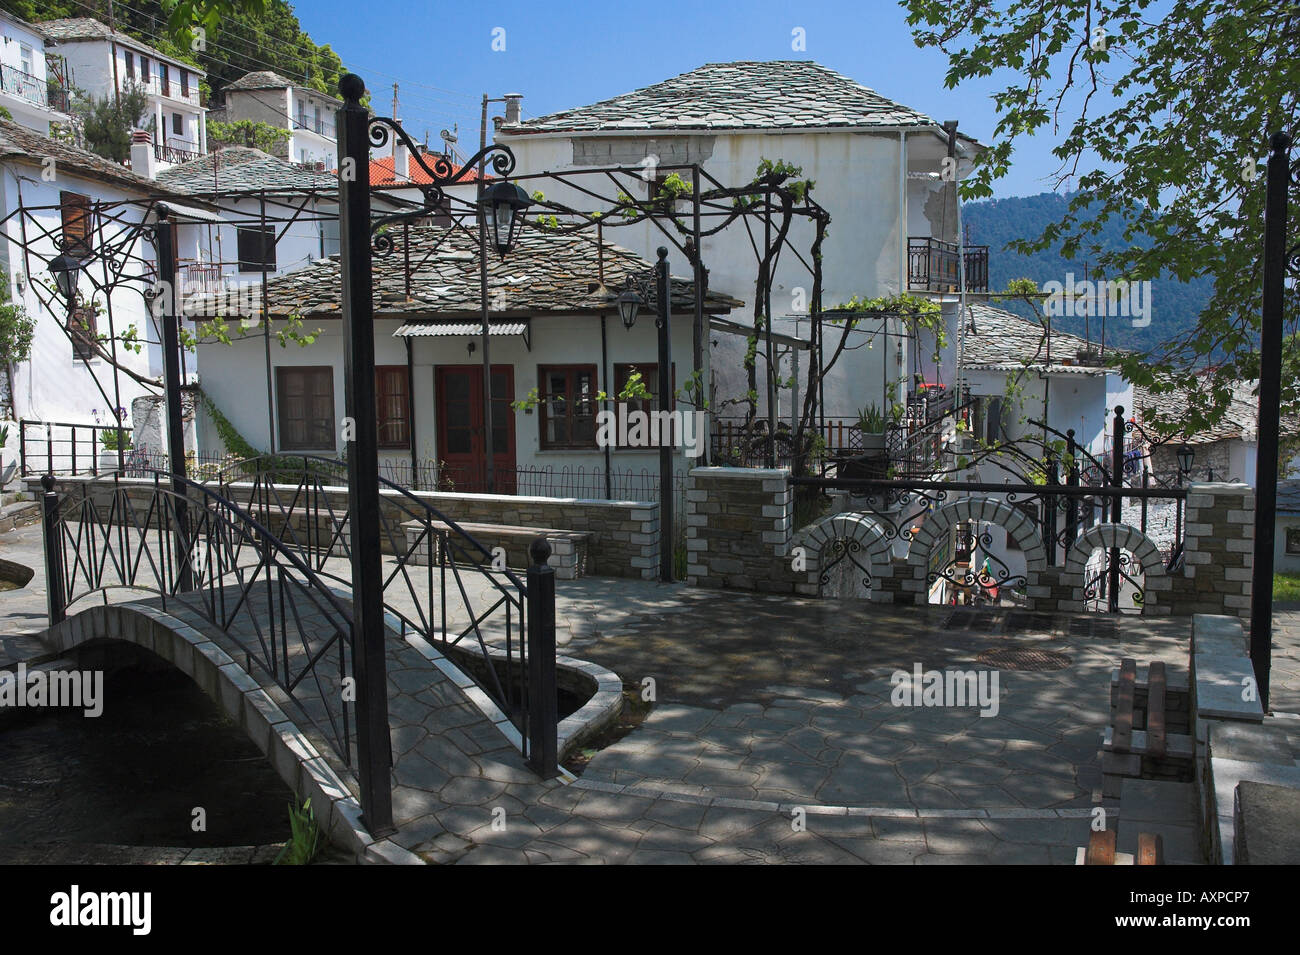 Le joli village de Panagia avec bâtiments rustiques et tuiles en ardoise, sur l'île de Thassos, en Grèce. Banque D'Images